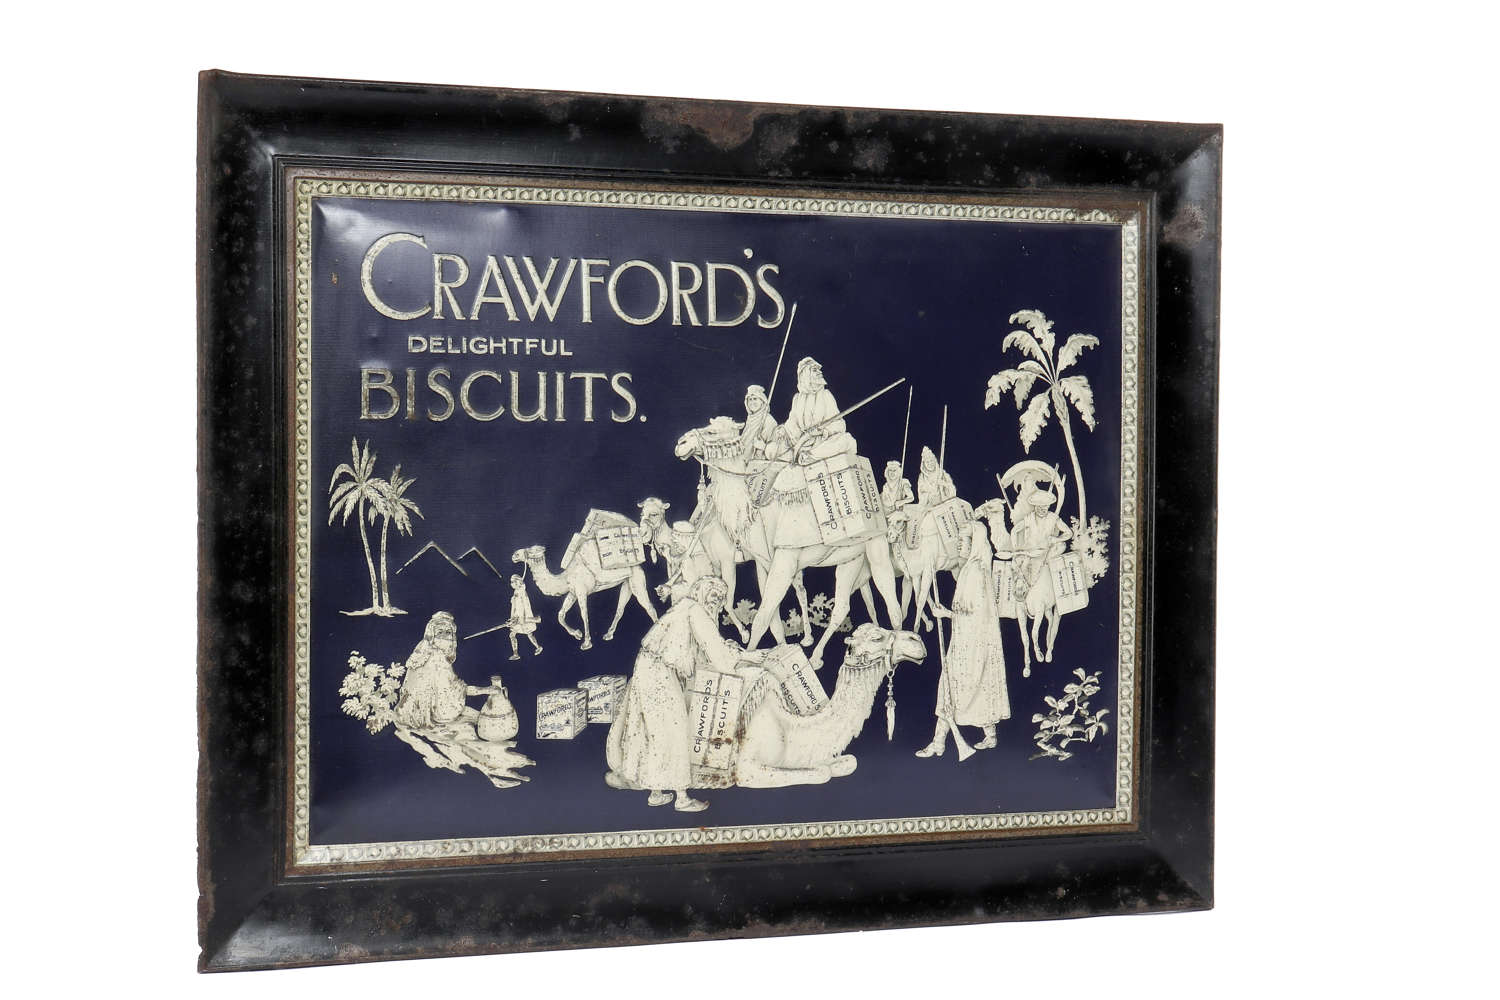 Original Crawford's tin sign